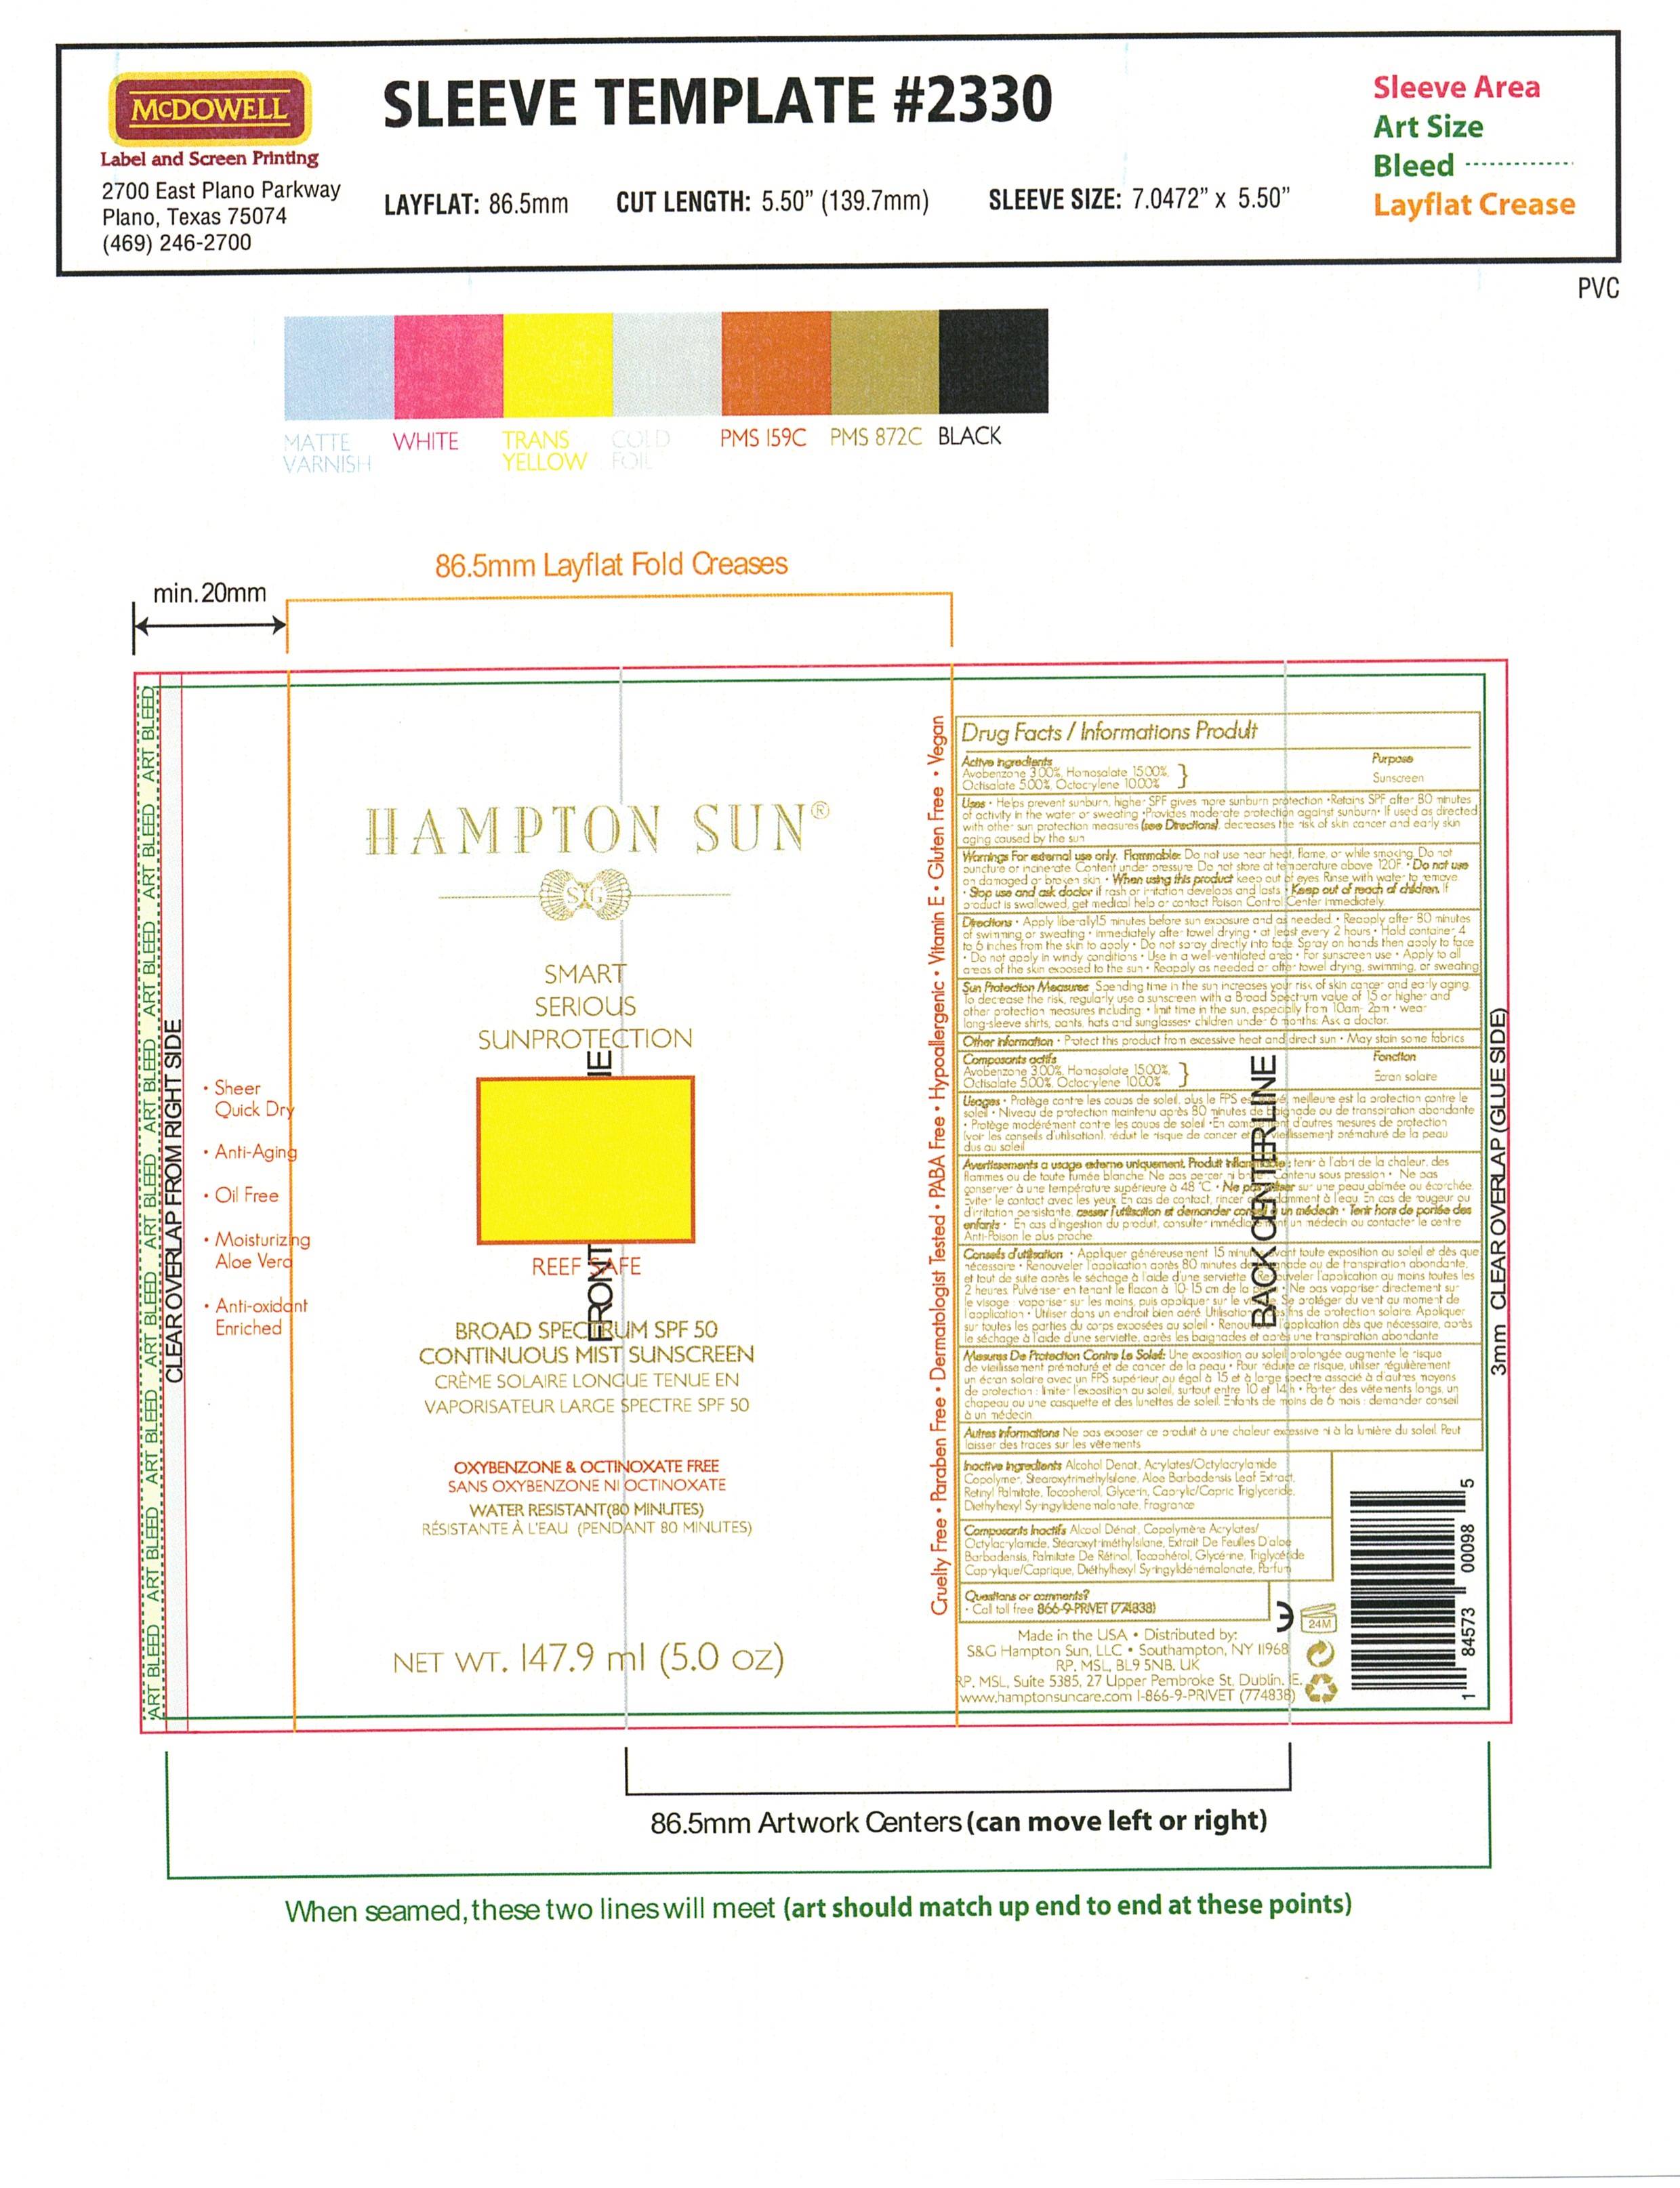 Hampton Sun SPF 50 Sunscreen